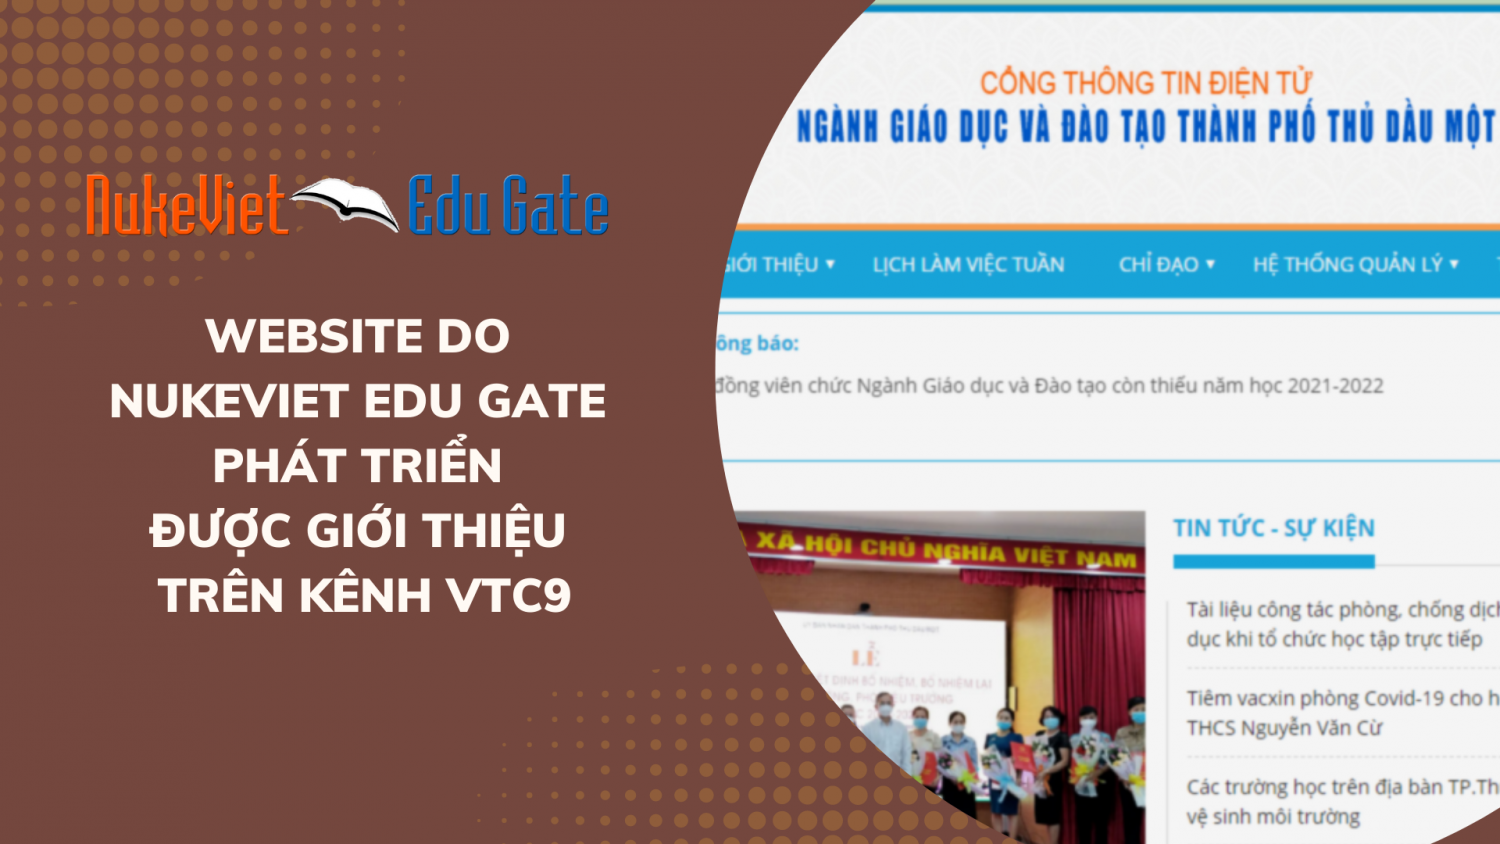 Website do NukeViet Edu Gate phát triển được giới thiệu trên kênh VTC9